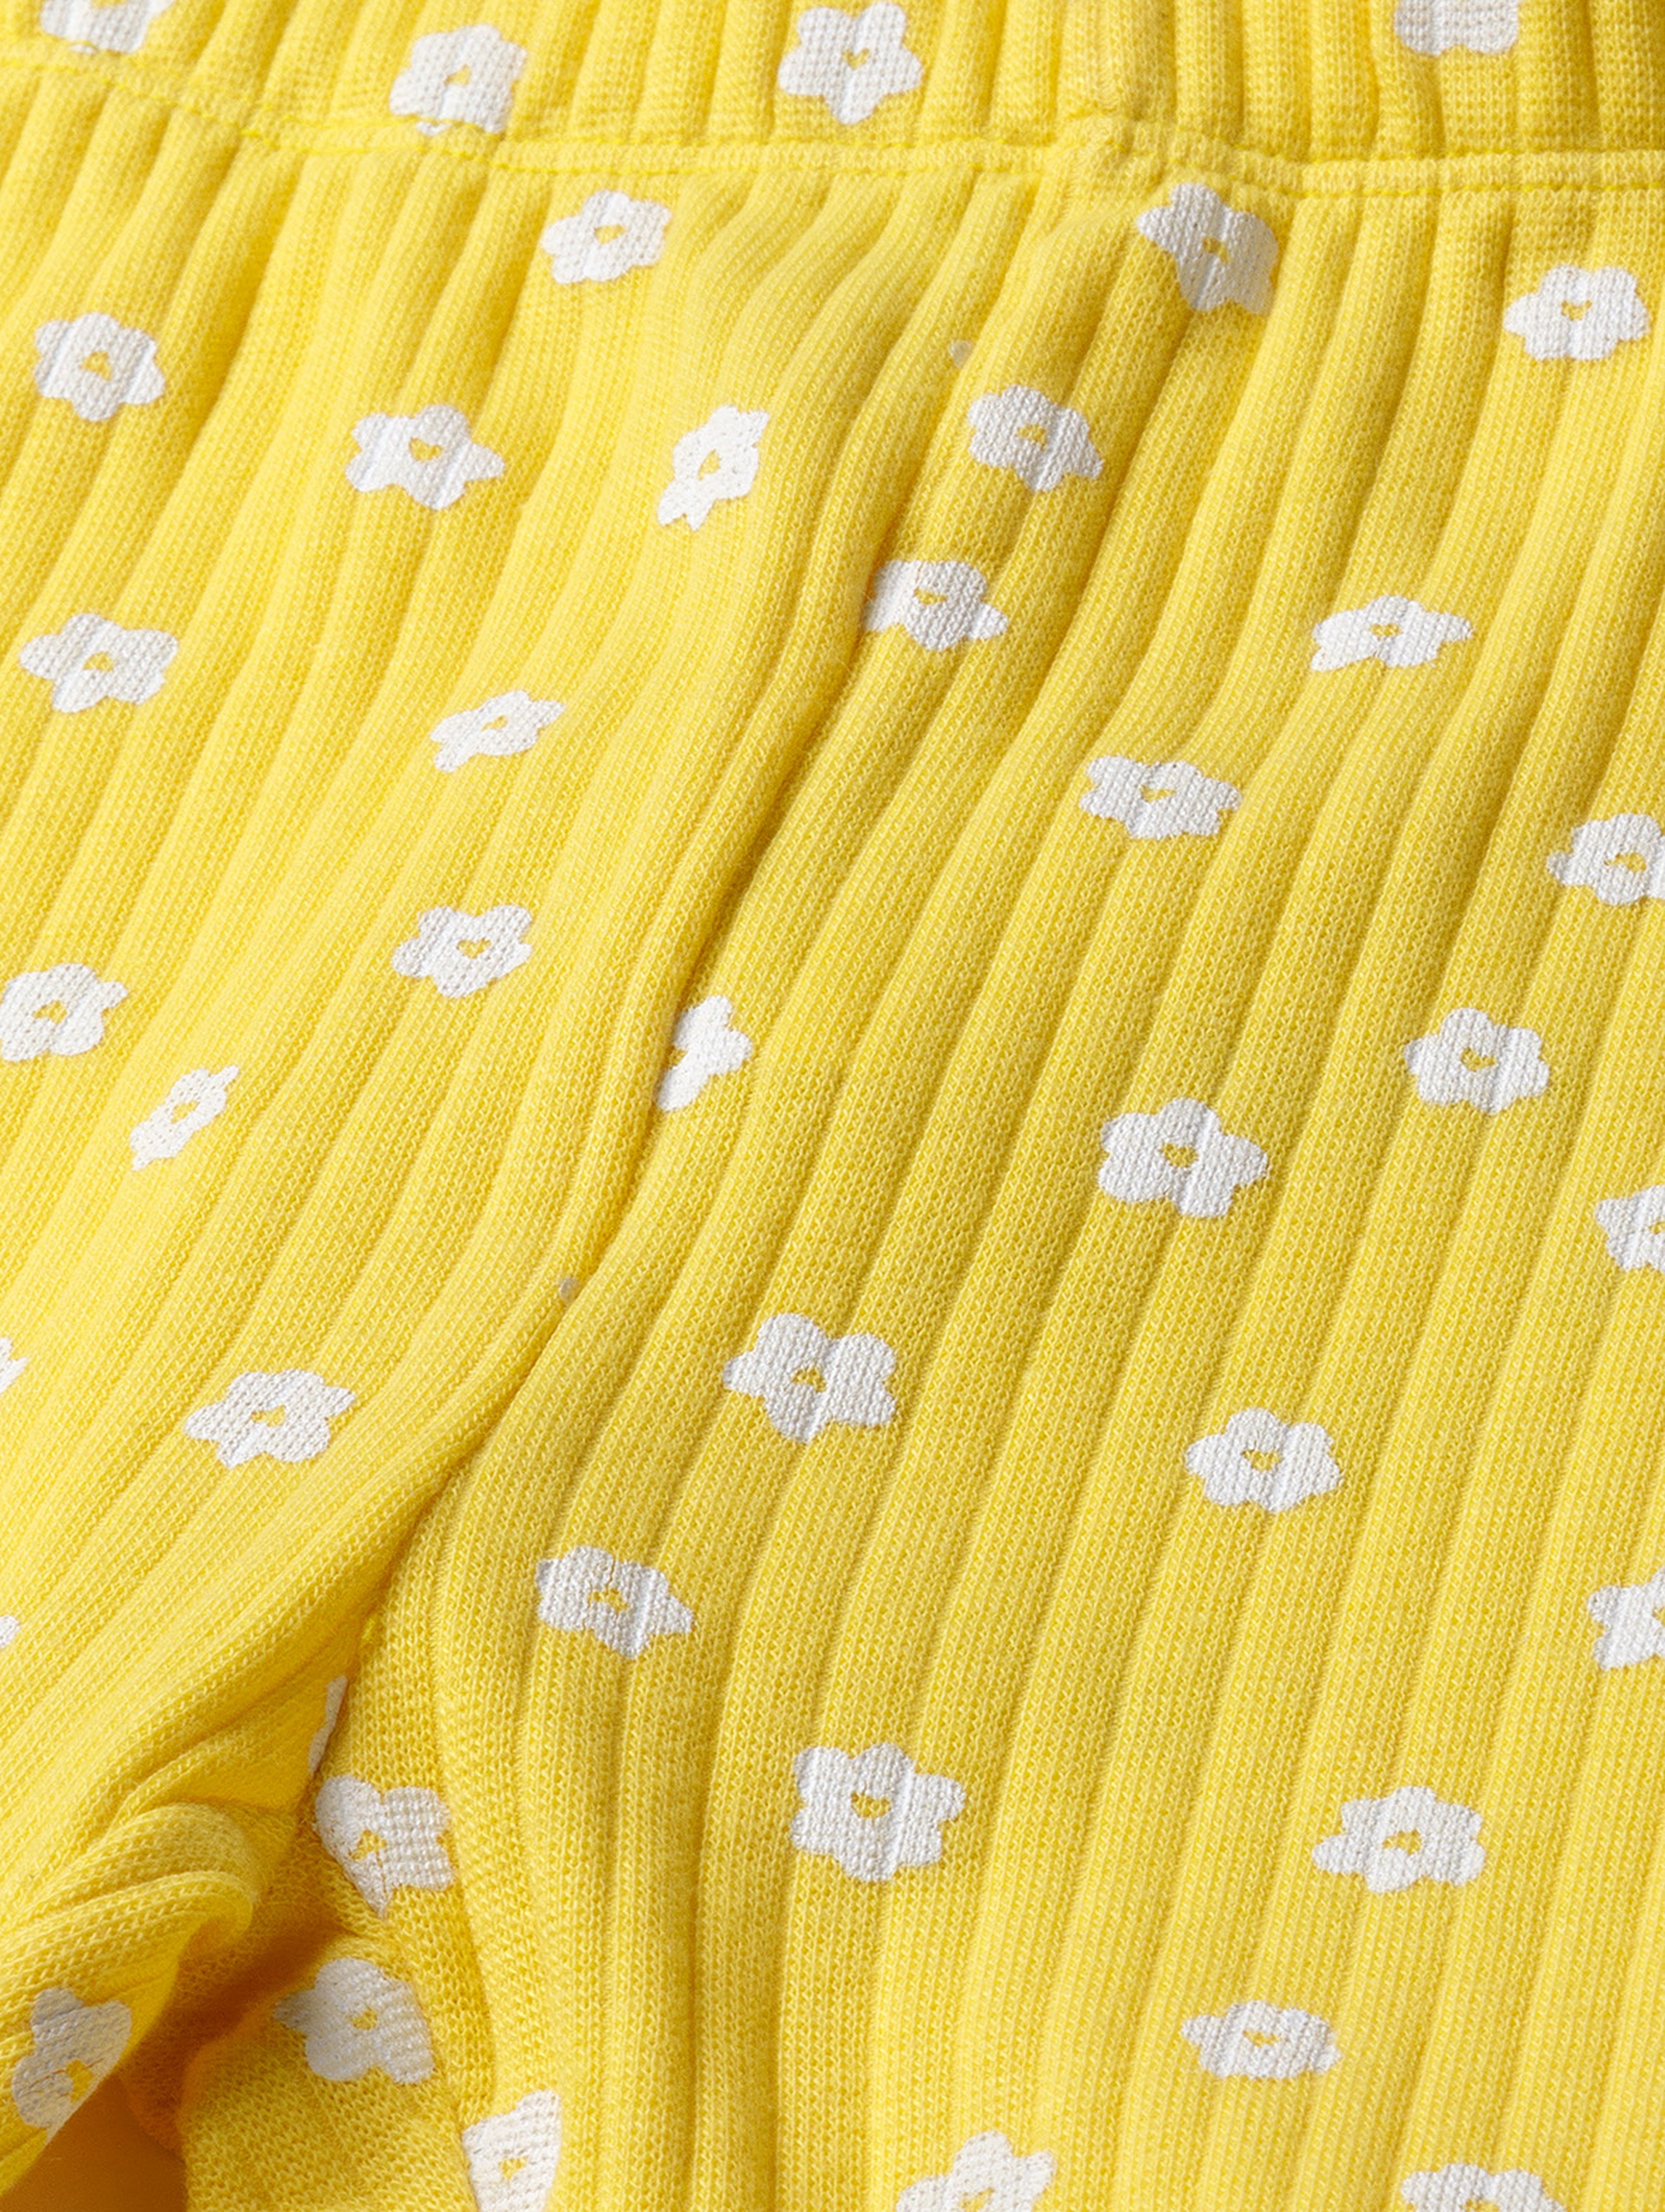 Żółte legginsy dla dziewczynki w drobne kwiaty